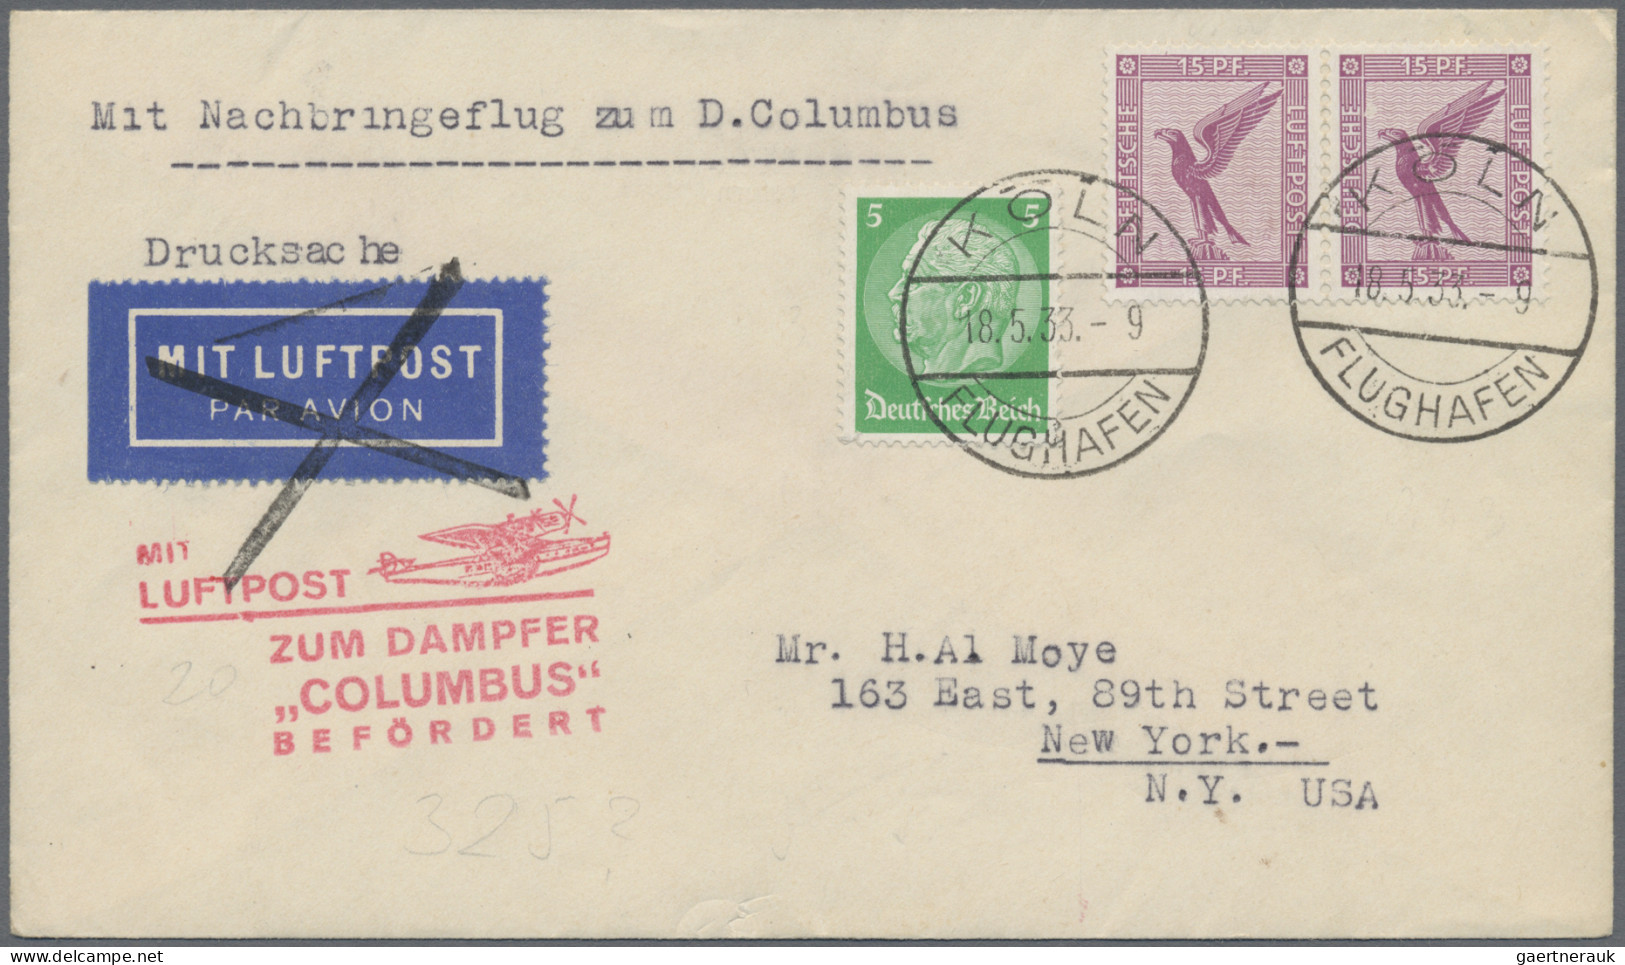 Deutsches Reich: 1919/1944, Partie von 14 Flugpost-Briefen/-Karten in netter Vie